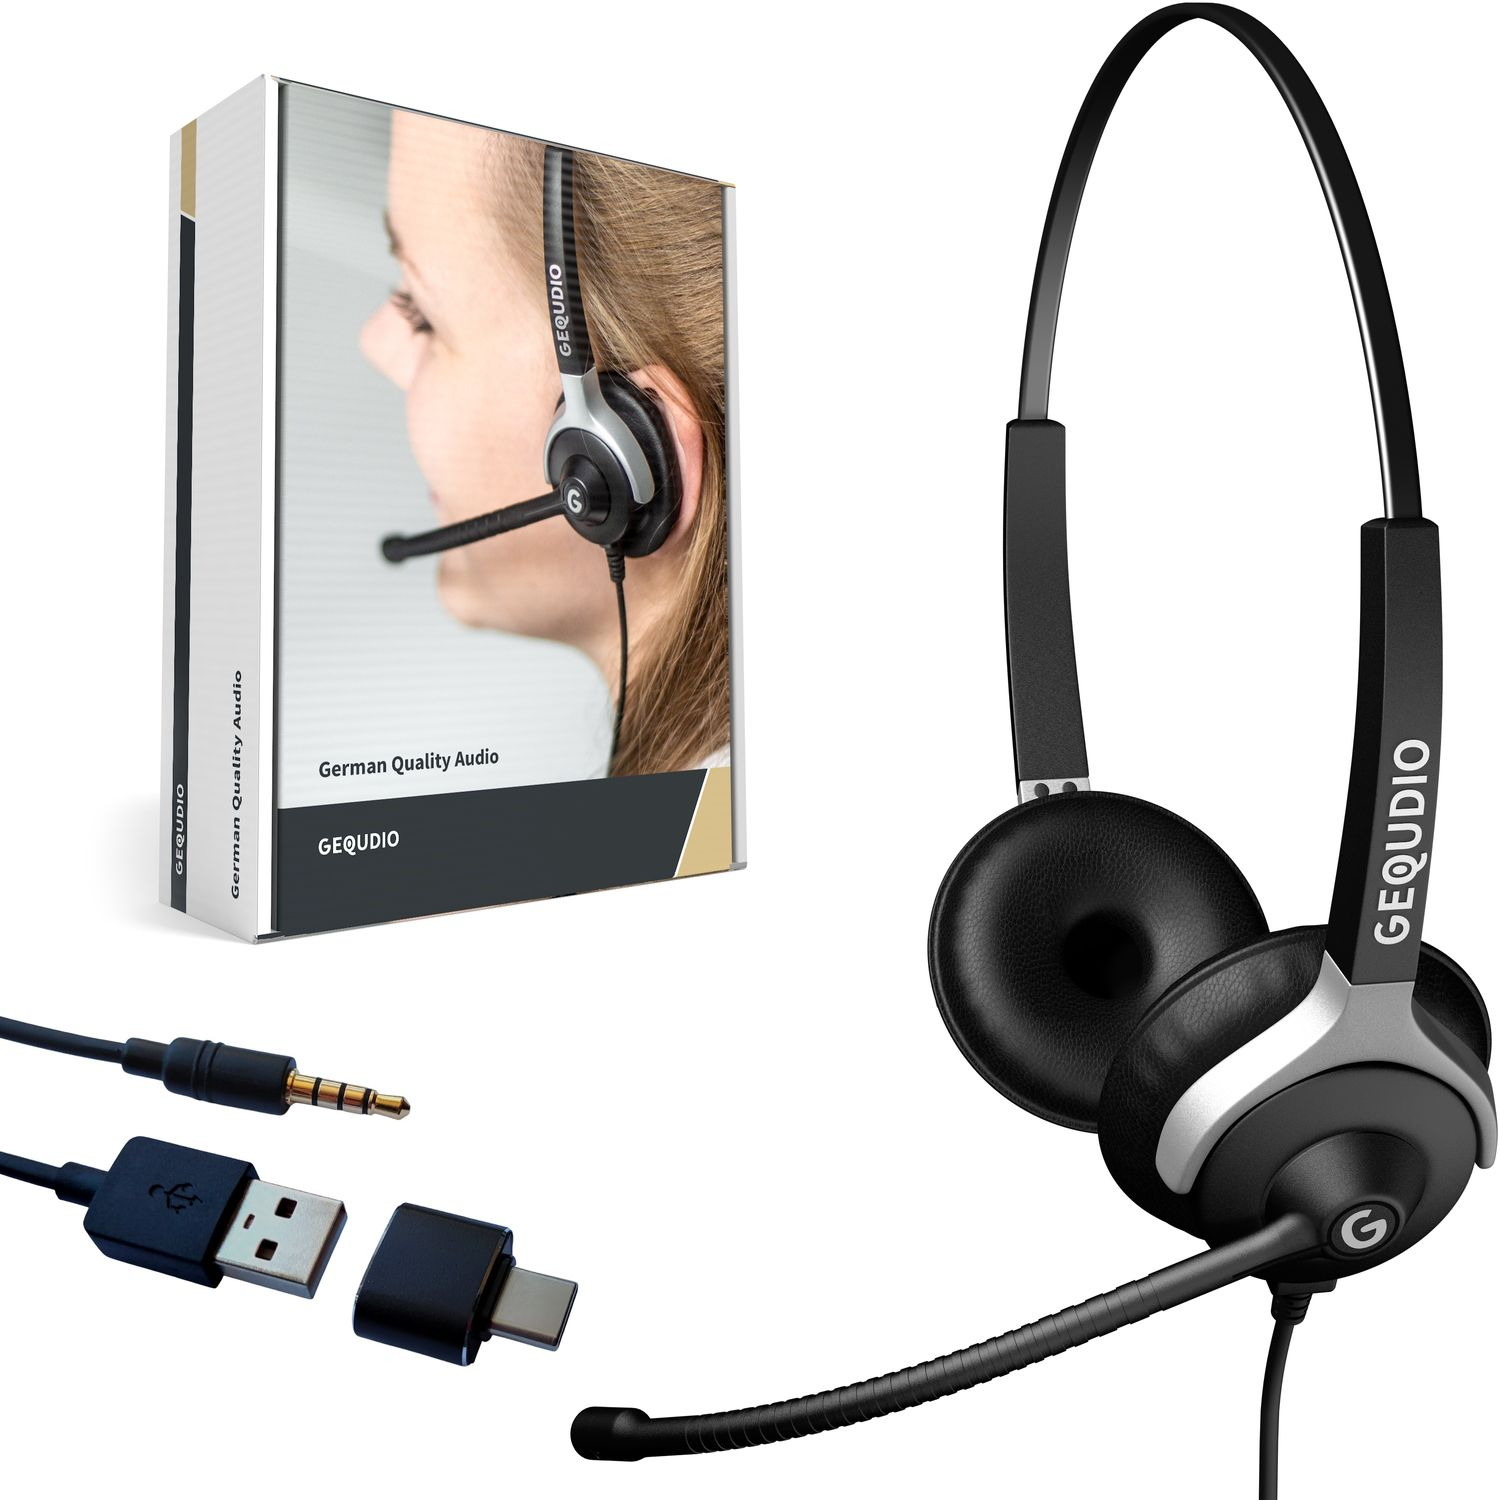 GEQUDIO Headset für PC MAC, mit On-ear Schwarz USB 2-Ohr Headset